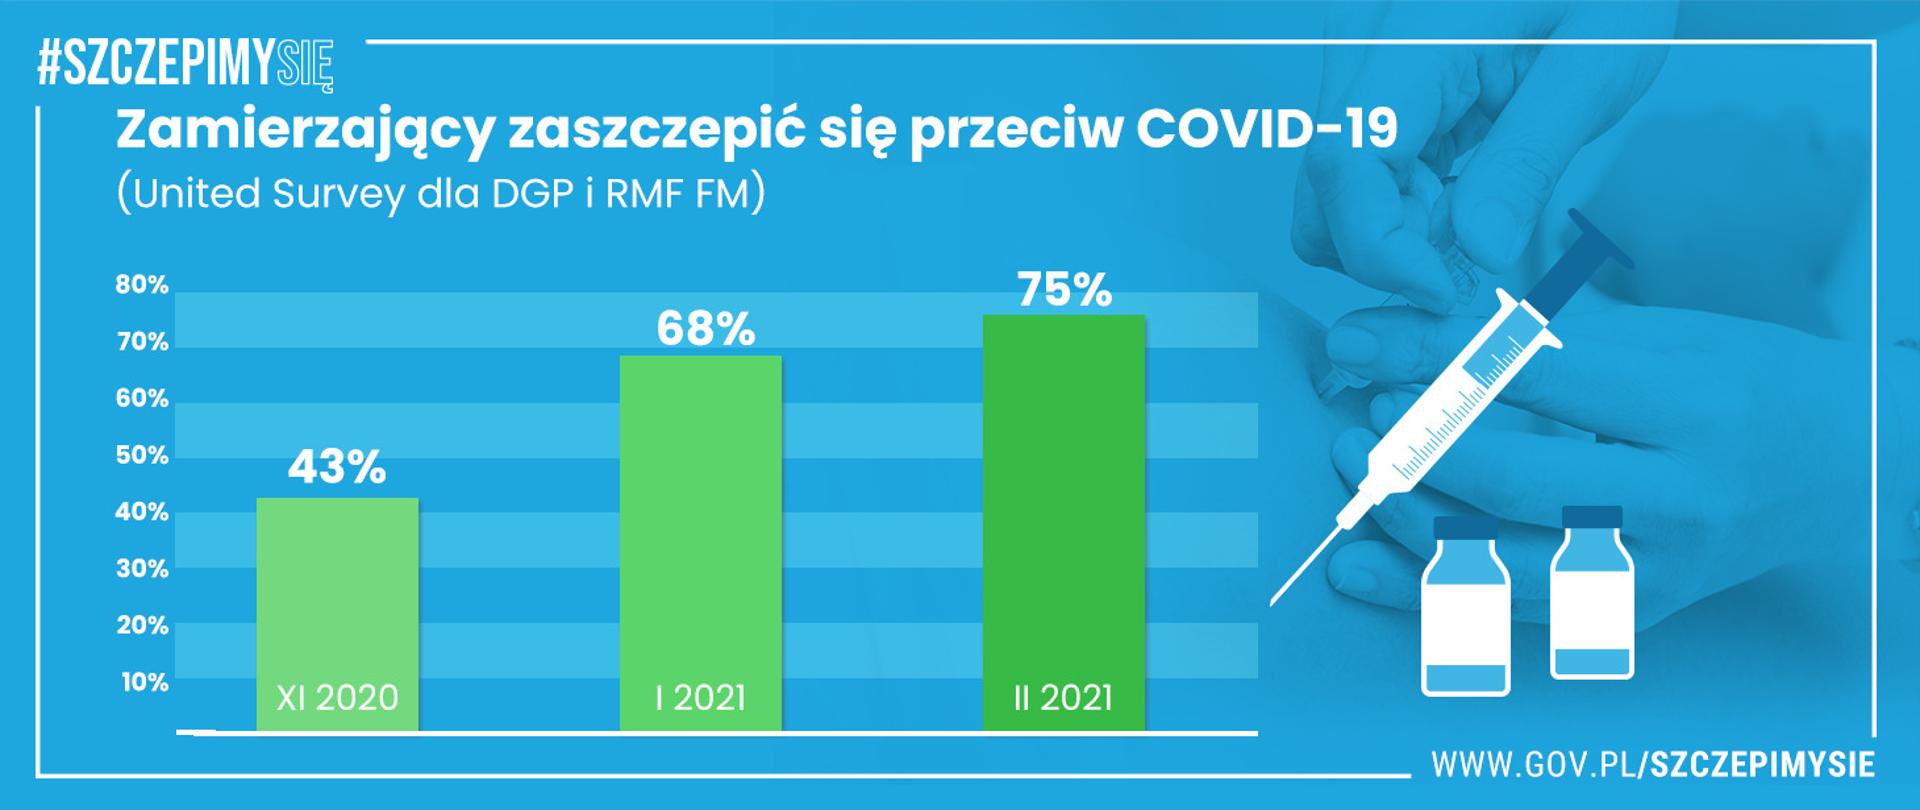 Grafika informująca o liczbie osób zamierzających zaszczepić się przeciwko Covid-19. Na niebieskim tle, zielone słupki wskazujące, że w grudniu 2020 było 43%, w styczniu br. 68%, a w lutym 75% chętnych na szczepienie.